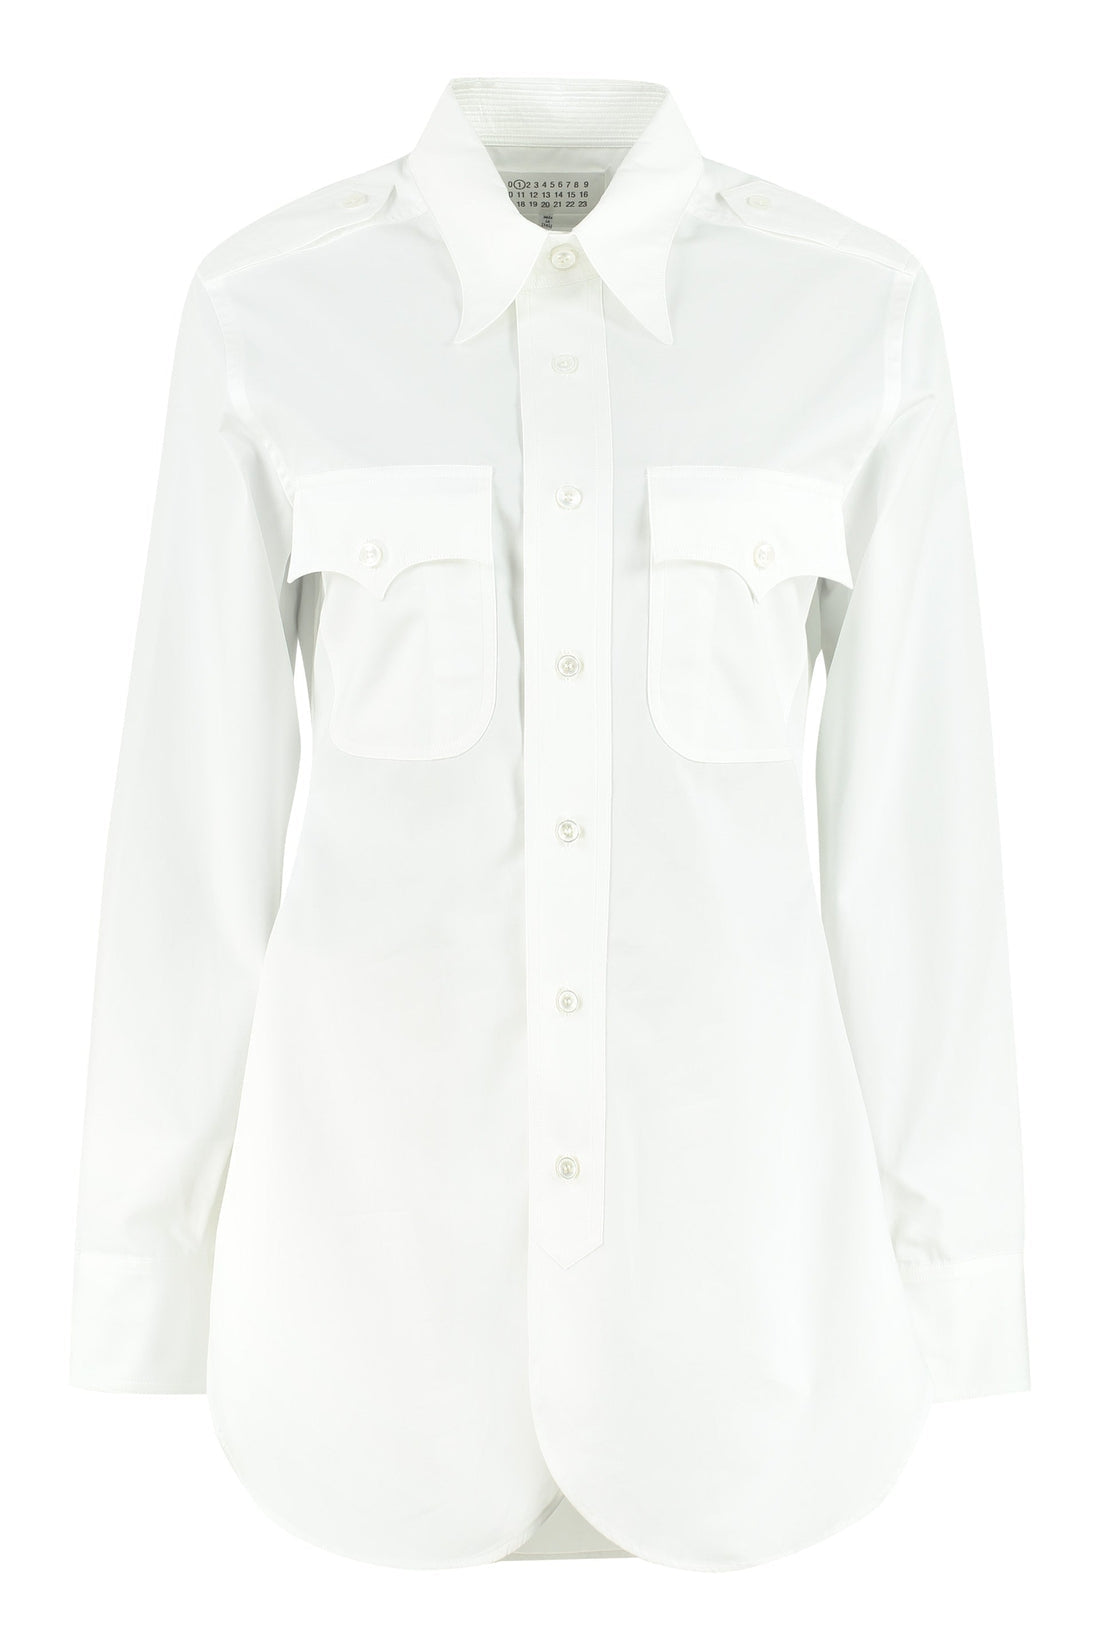 Maison Margiela-OUTLET-SALE-Cotton poplin shirt-ARCHIVIST